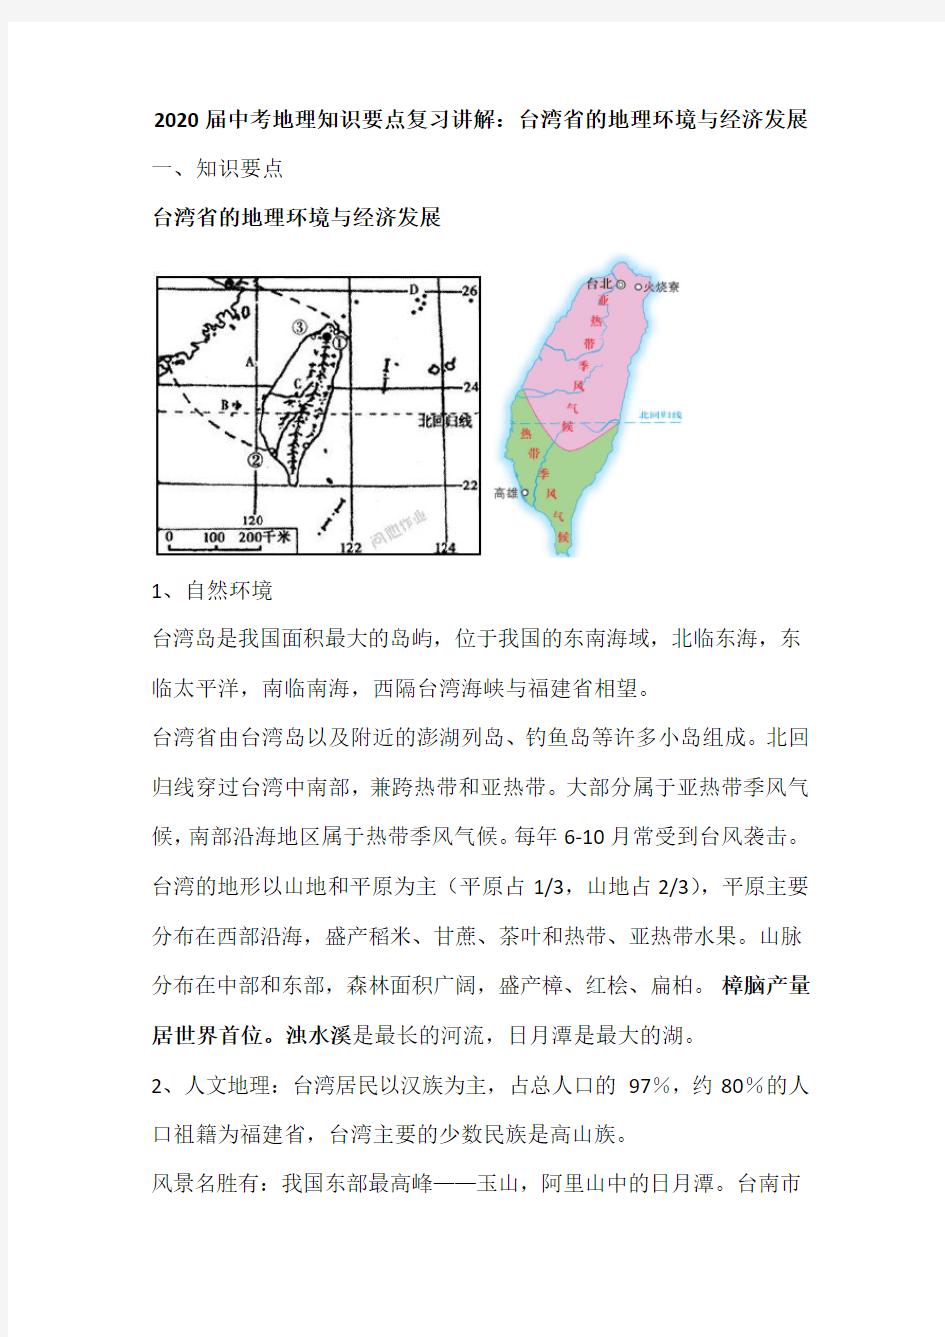 台湾省的地理环境与经济发展